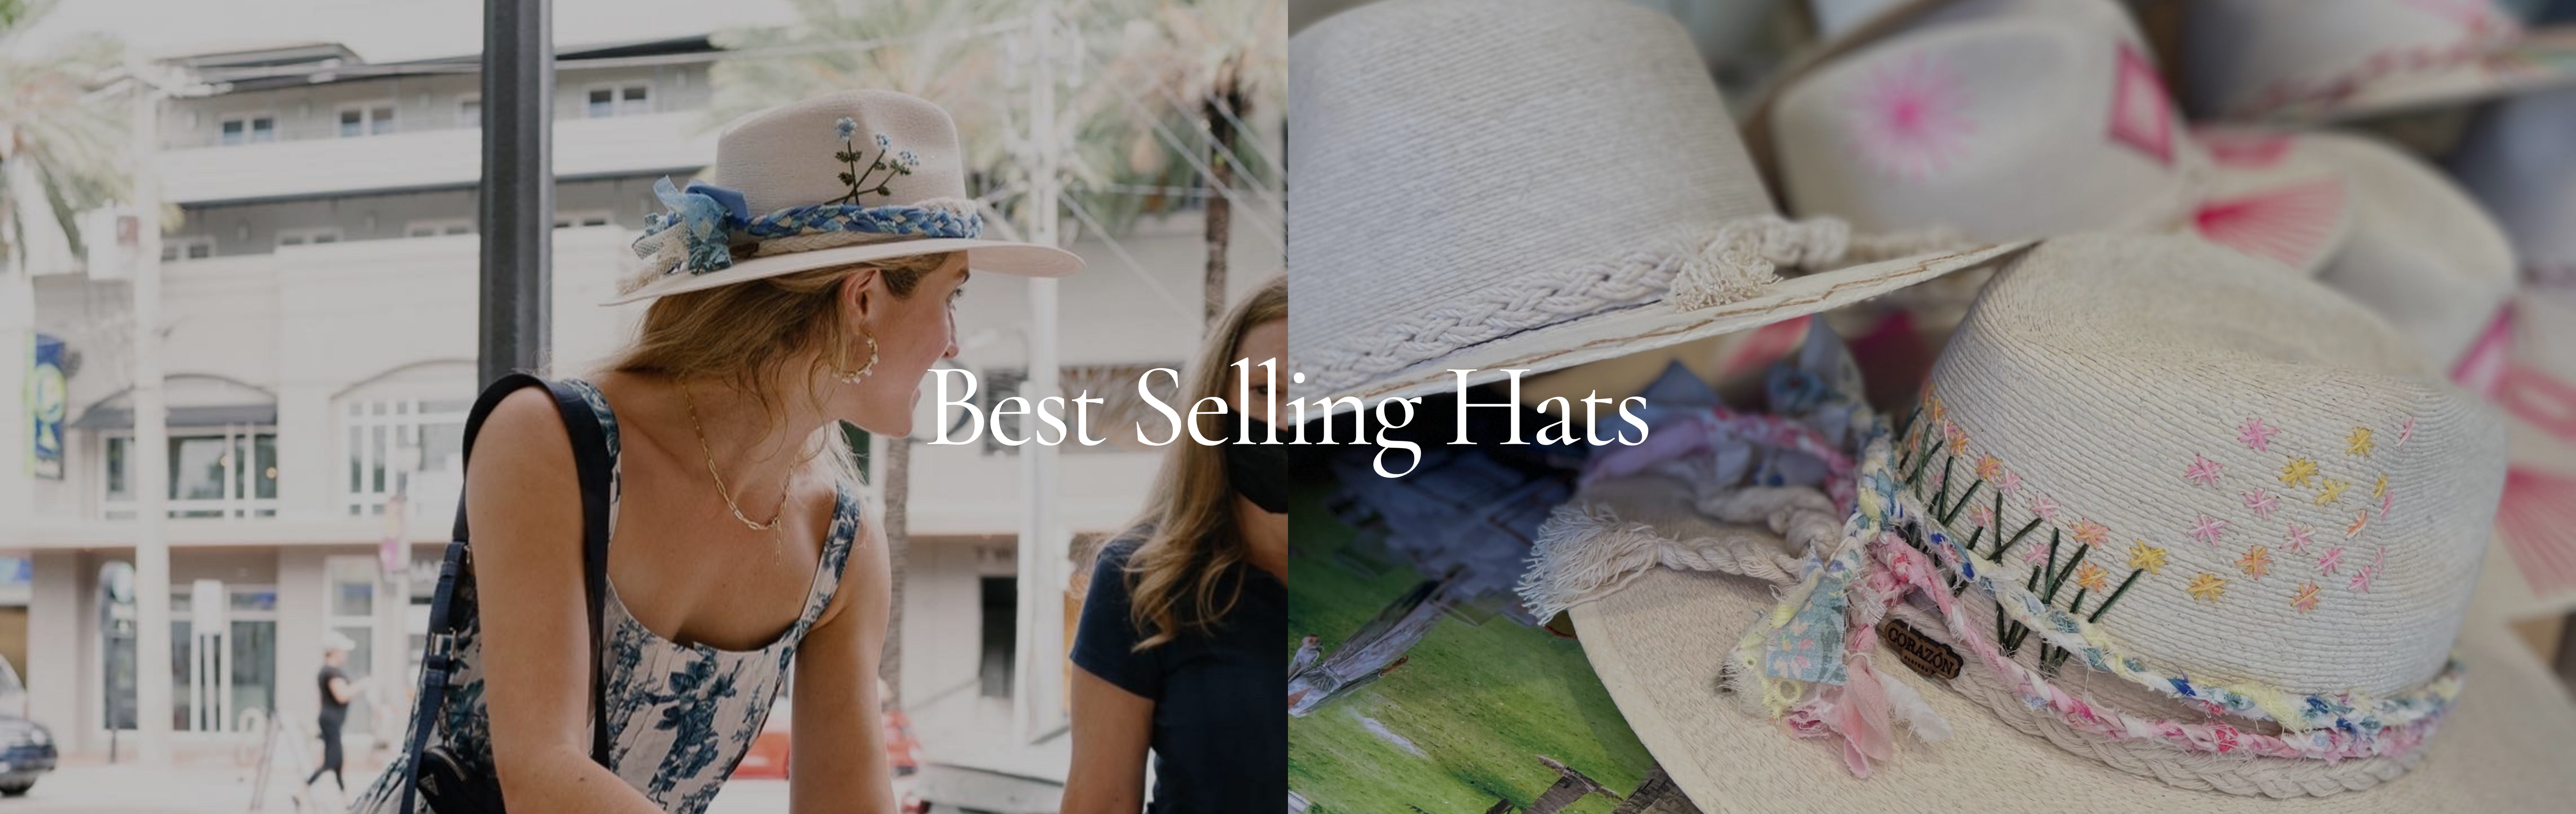 Best Selling Hats